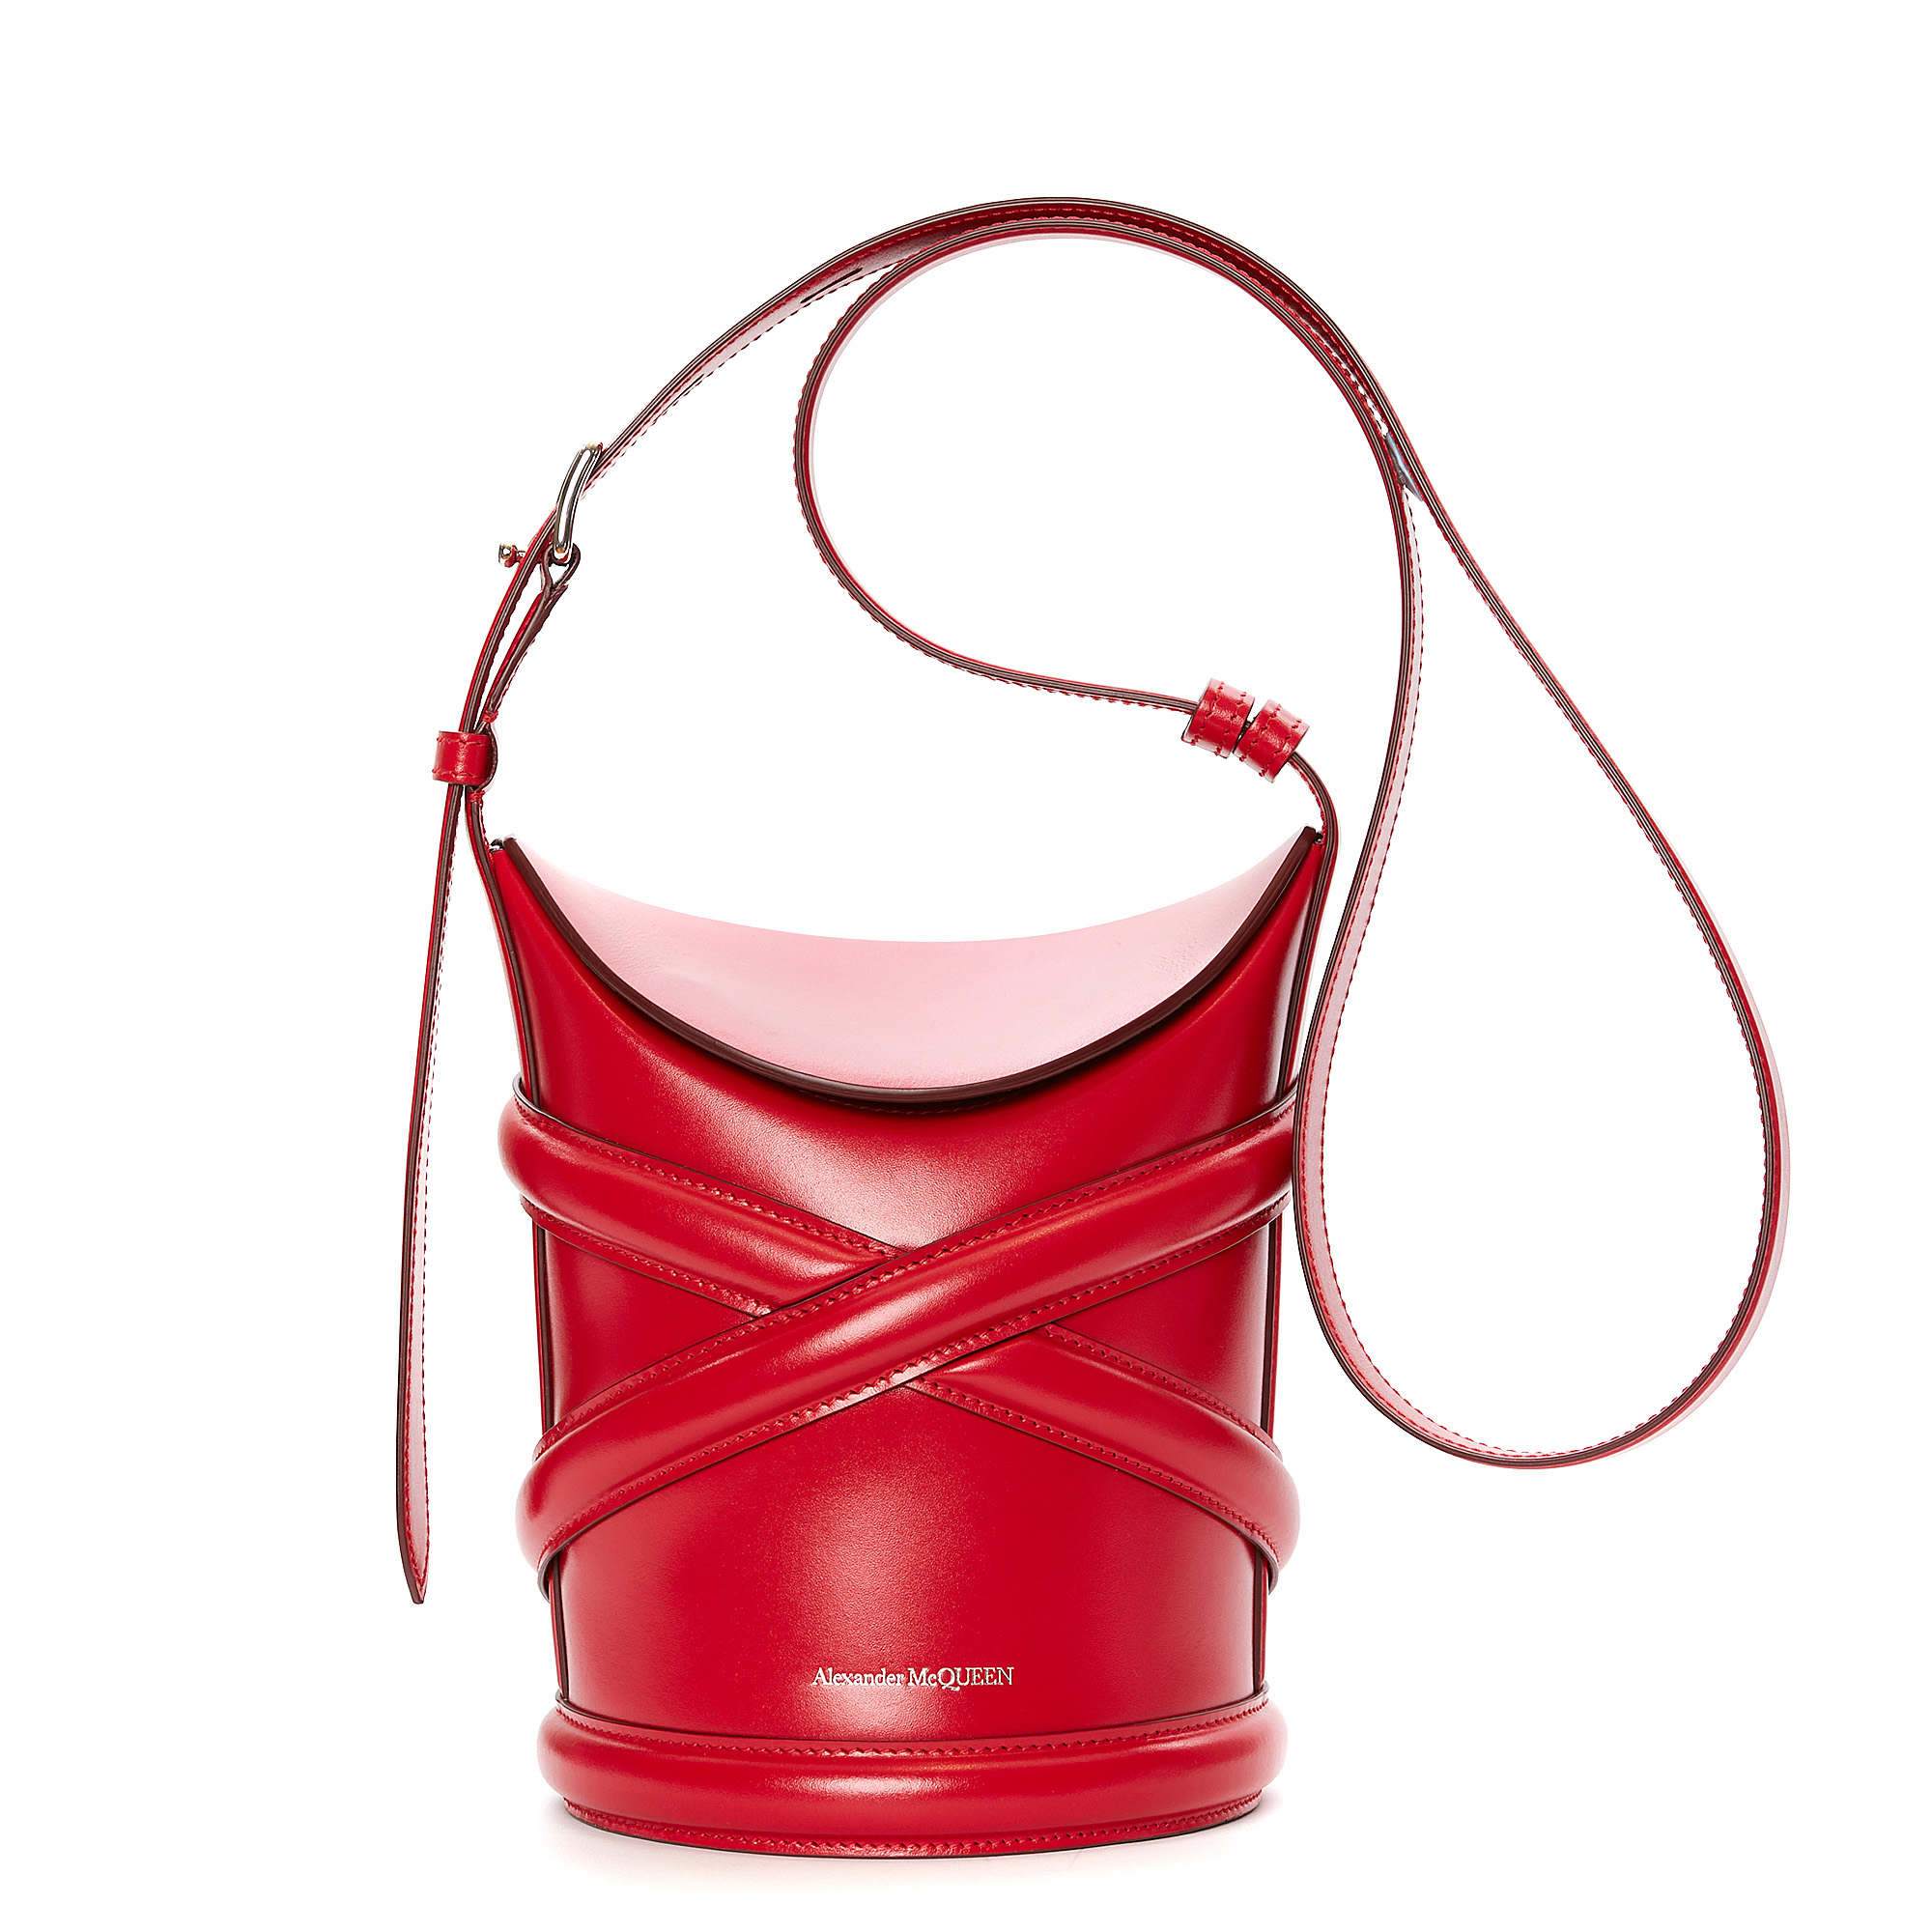 アレキサンダー・マックイーンから新作バッグ「カーブ」が発売 シンプルな3色を展開